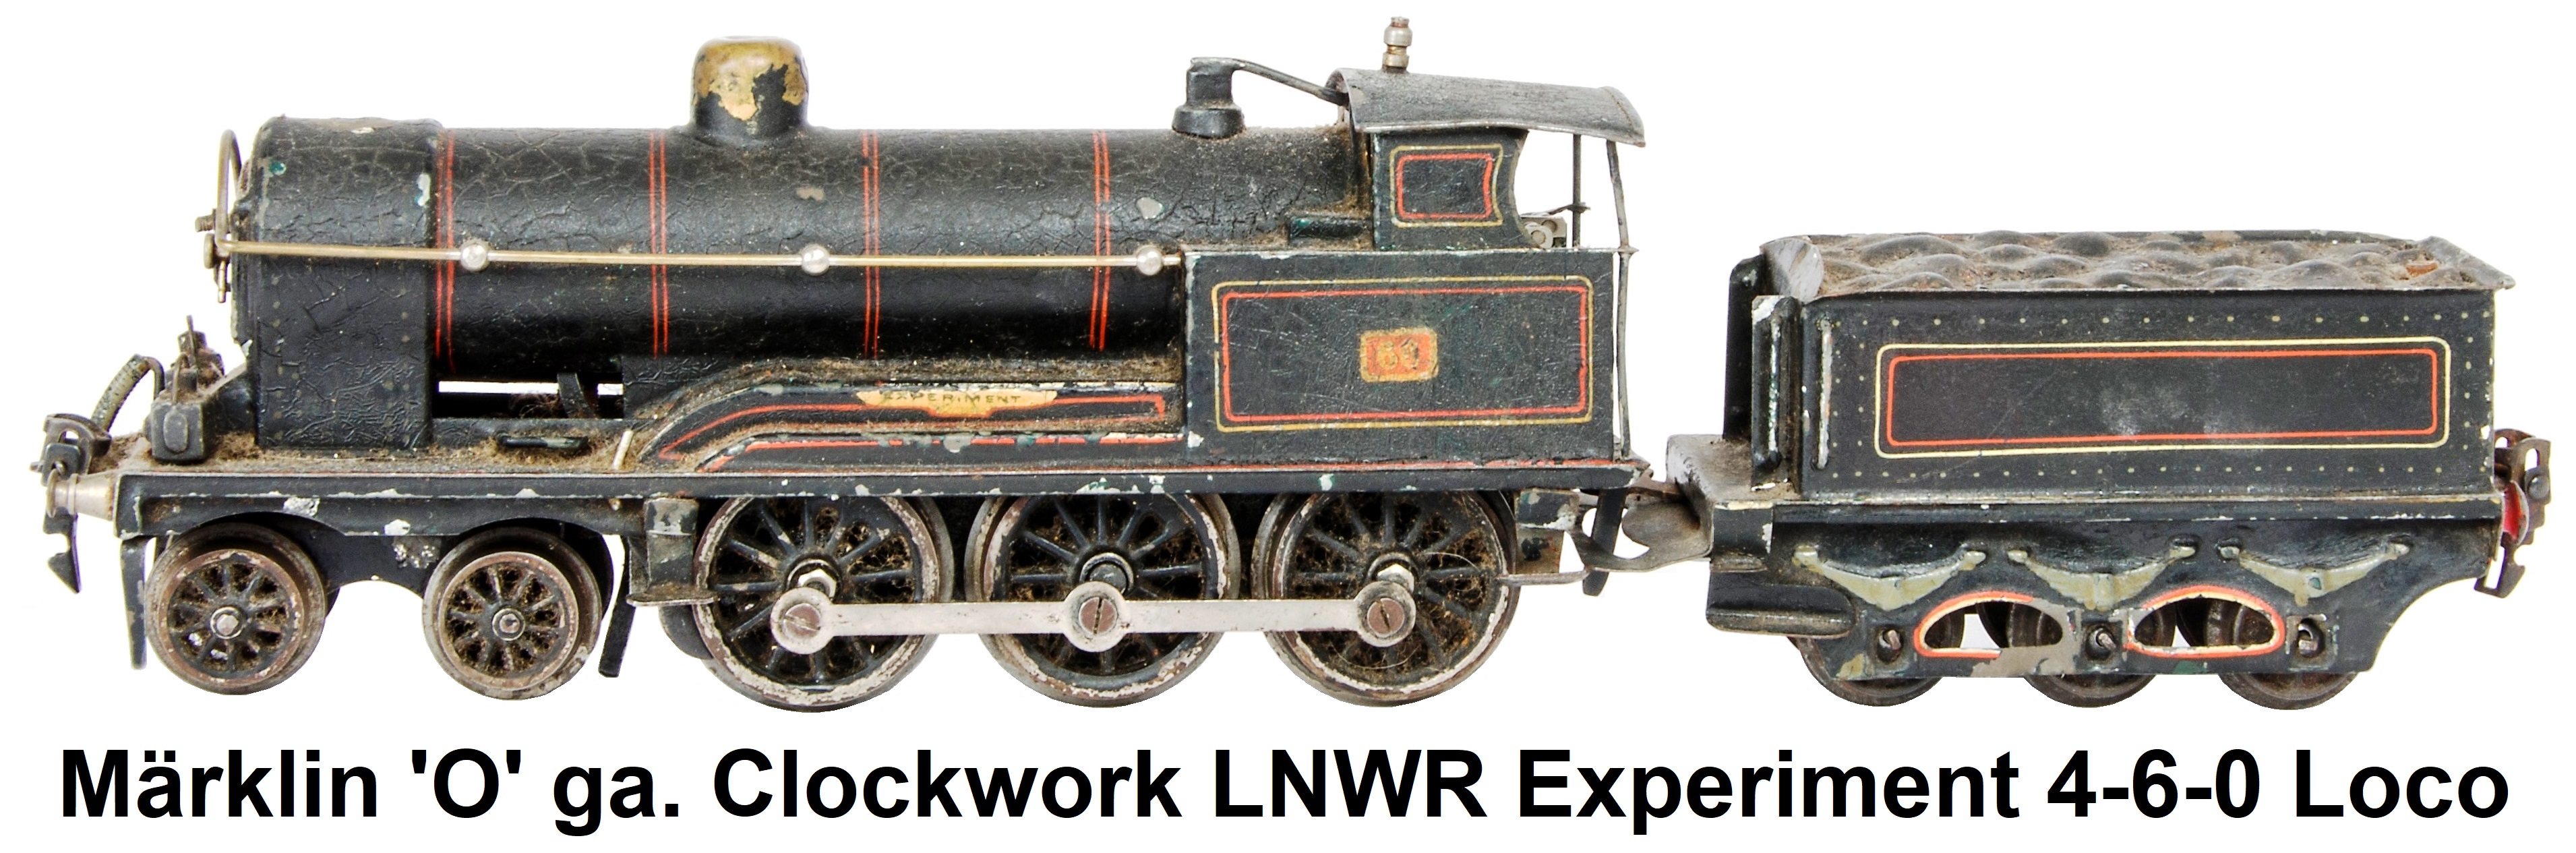 Märklin 'O' gauge clockwork LNWR 'Experiment' 4-6-0 Locomotive and Tender, in LNWR red-lined black livery